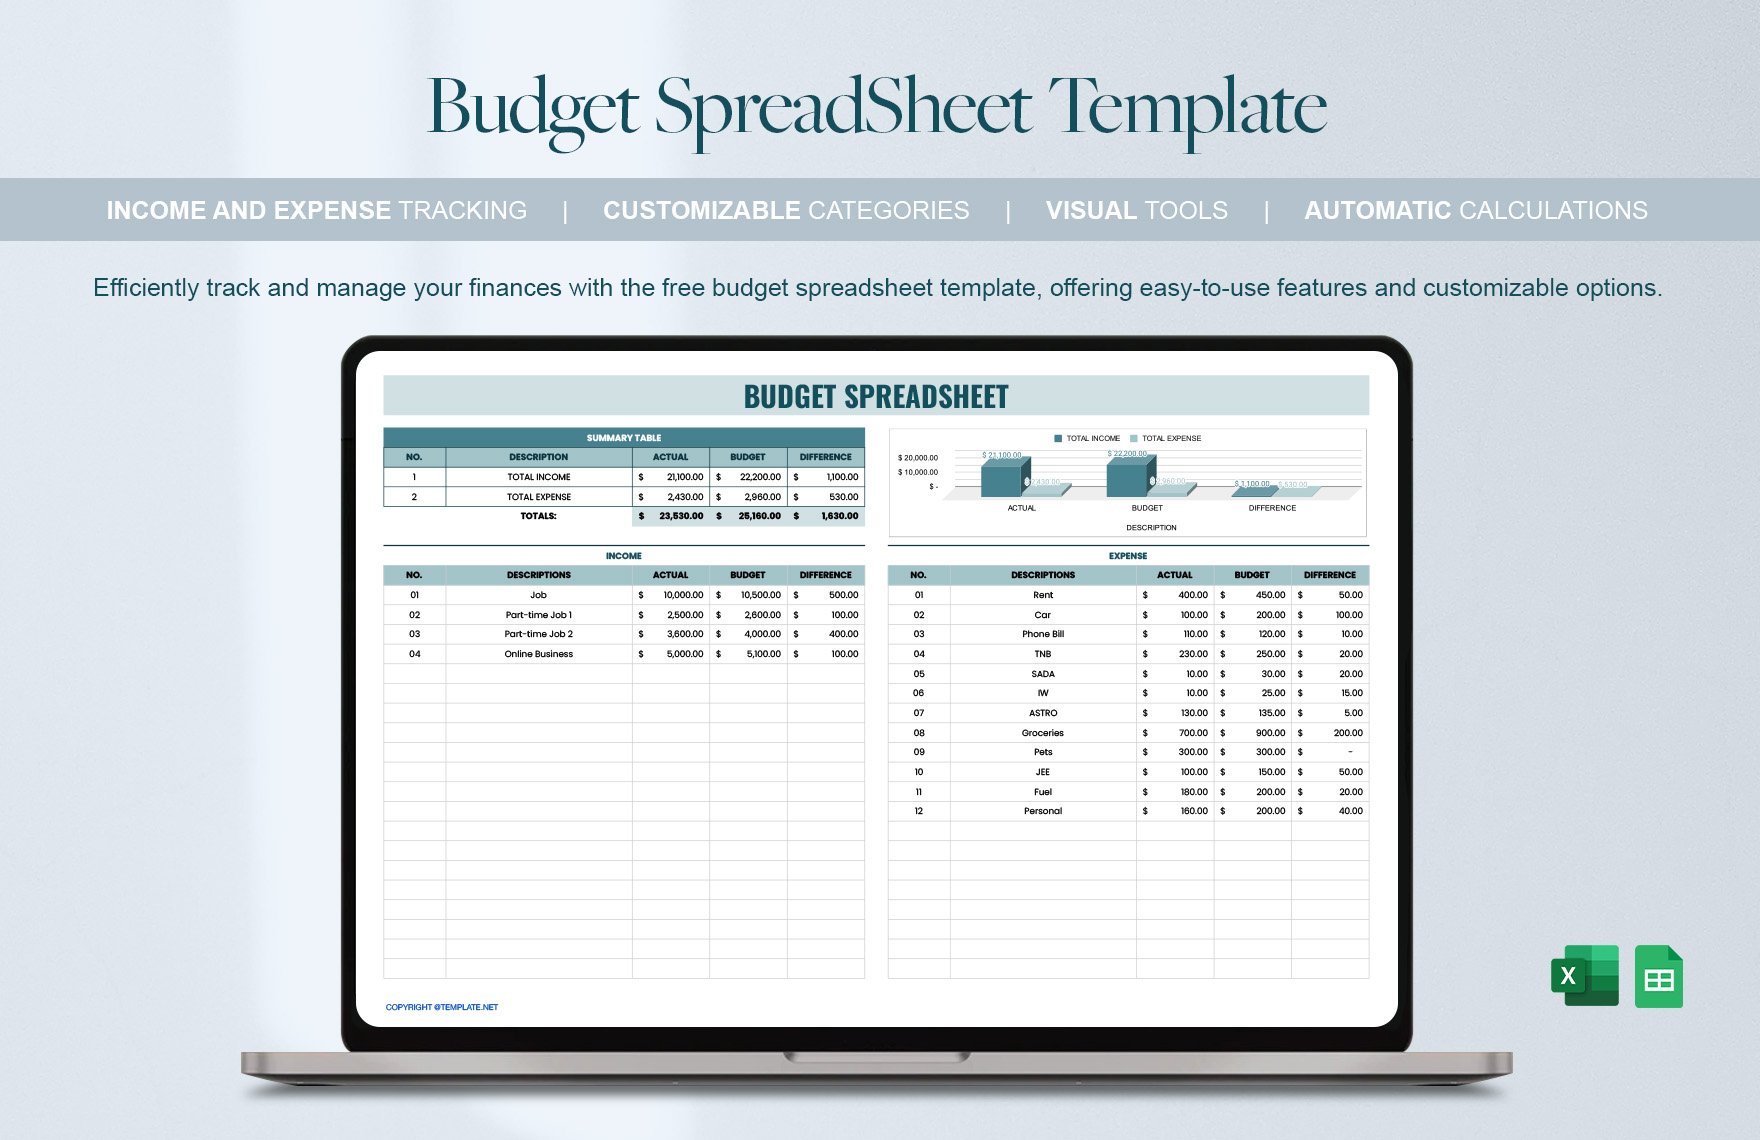 Budget SpreadSheet Template